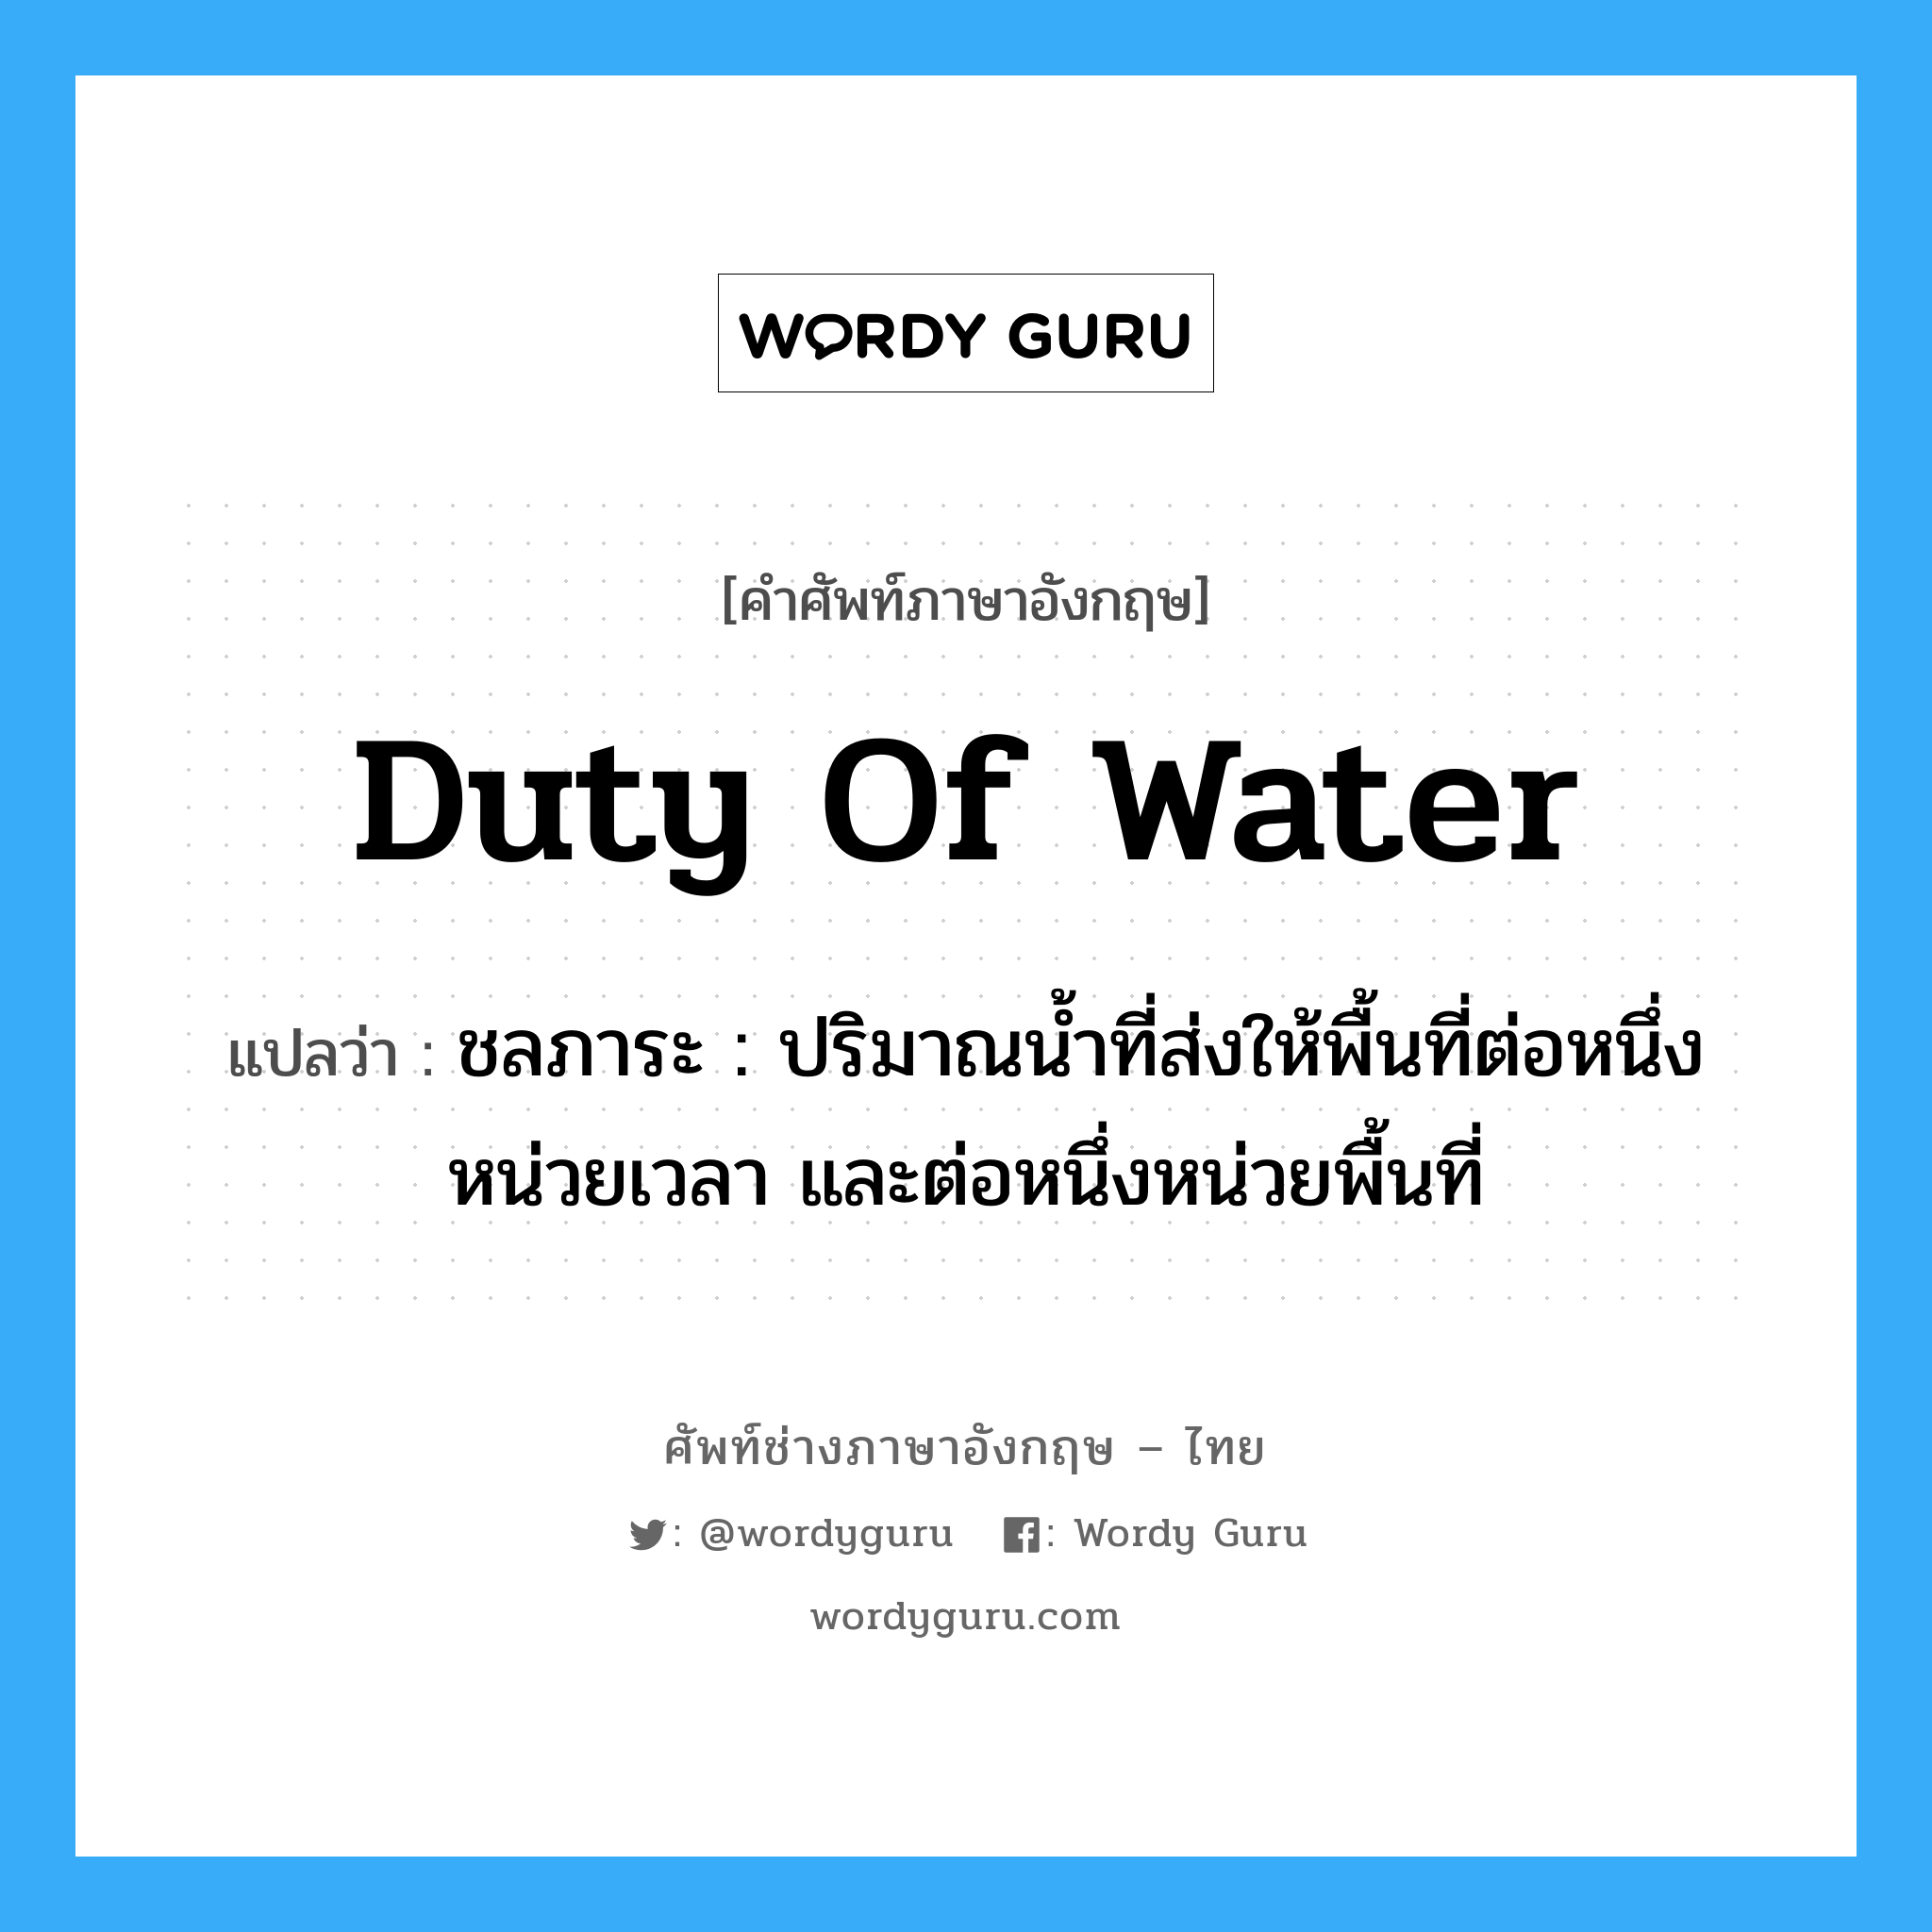 duty of water แปลว่า?, คำศัพท์ช่างภาษาอังกฤษ - ไทย duty of water คำศัพท์ภาษาอังกฤษ duty of water แปลว่า ชลภาระ : ปริมาณน้ำที่ส่งให้พื้นที่ต่อหนึ่งหน่วยเวลา และต่อหนึ่งหน่วยพื้นที่